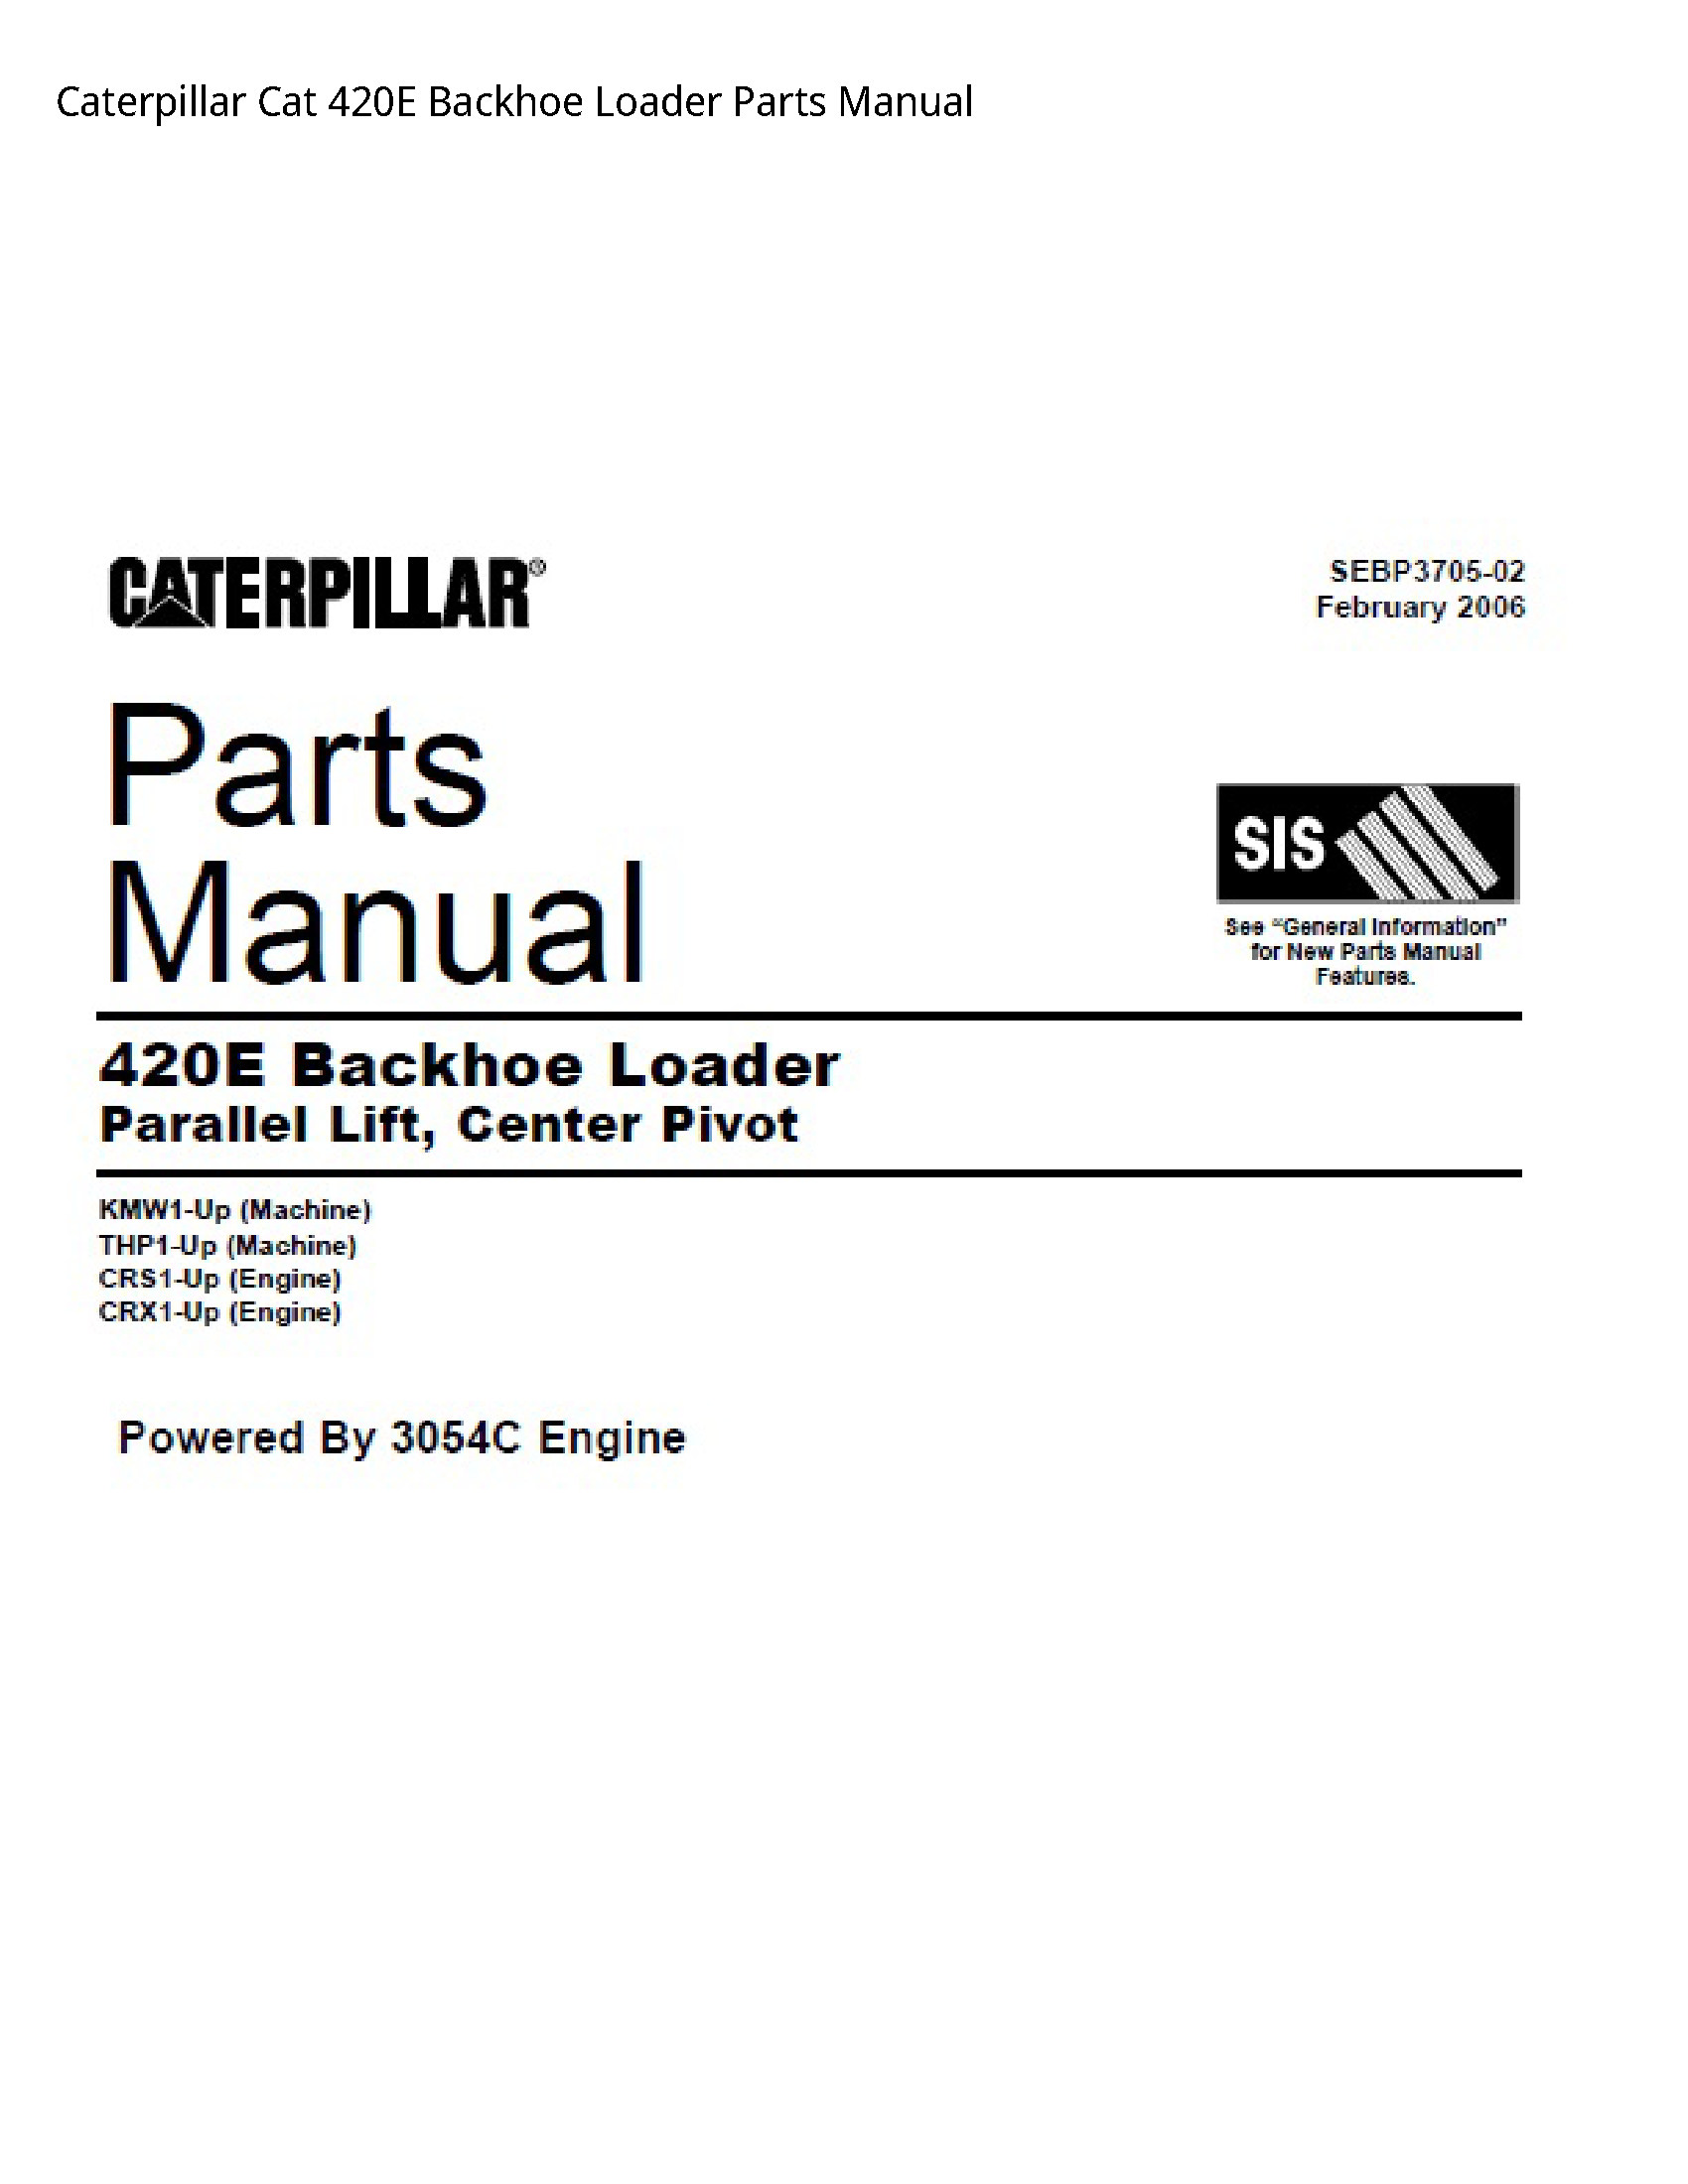 Caterpillar 420E Cat Backhoe Loader Parts manual